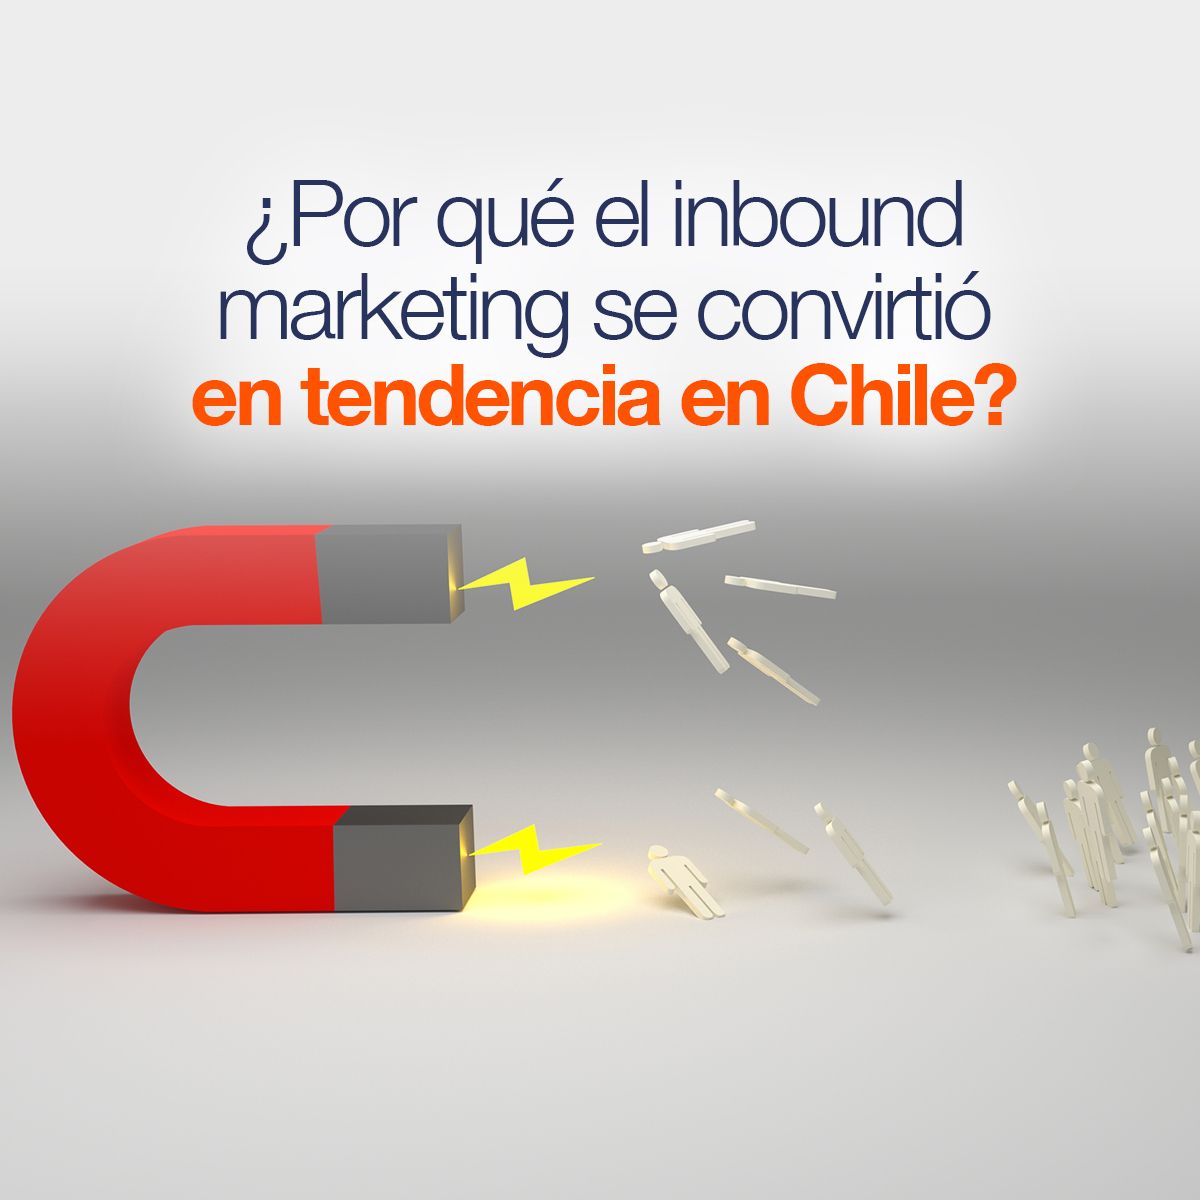 ¿Por qué el inbound marketing se convirtió en tendencia en Chile?